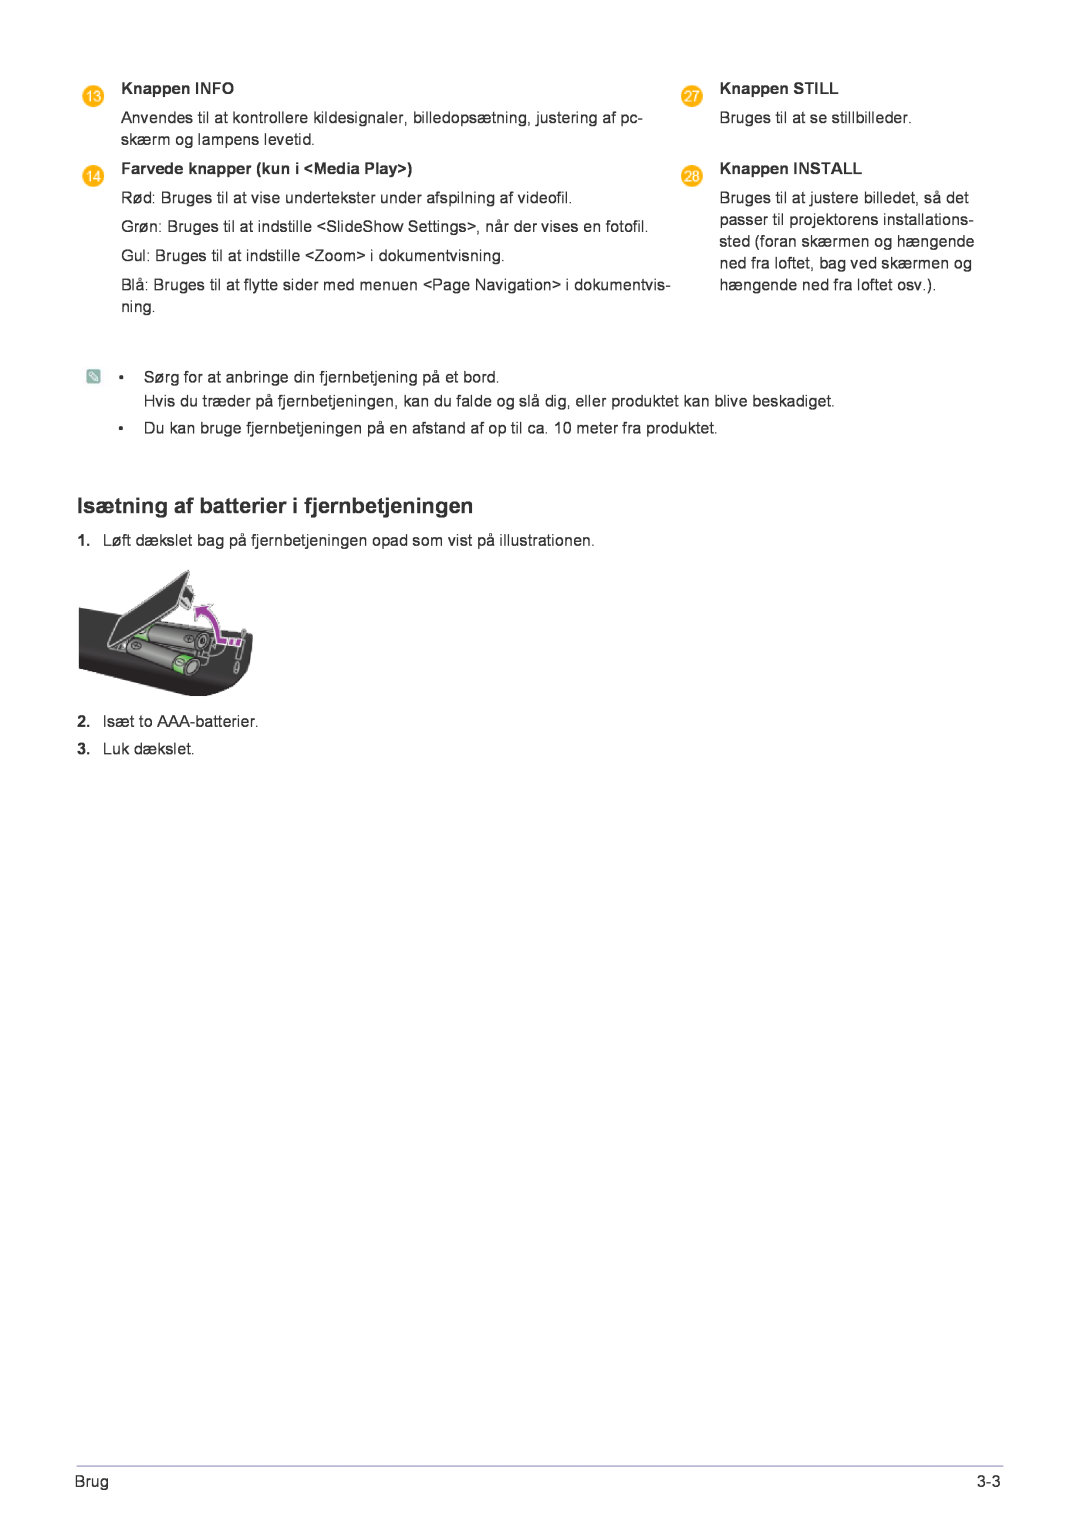 Samsung SP2553XWCX/EN manual Isætning af batterier i fjernbetjeningen, Knappen INFO, Farvede knapper kun i Media Play 